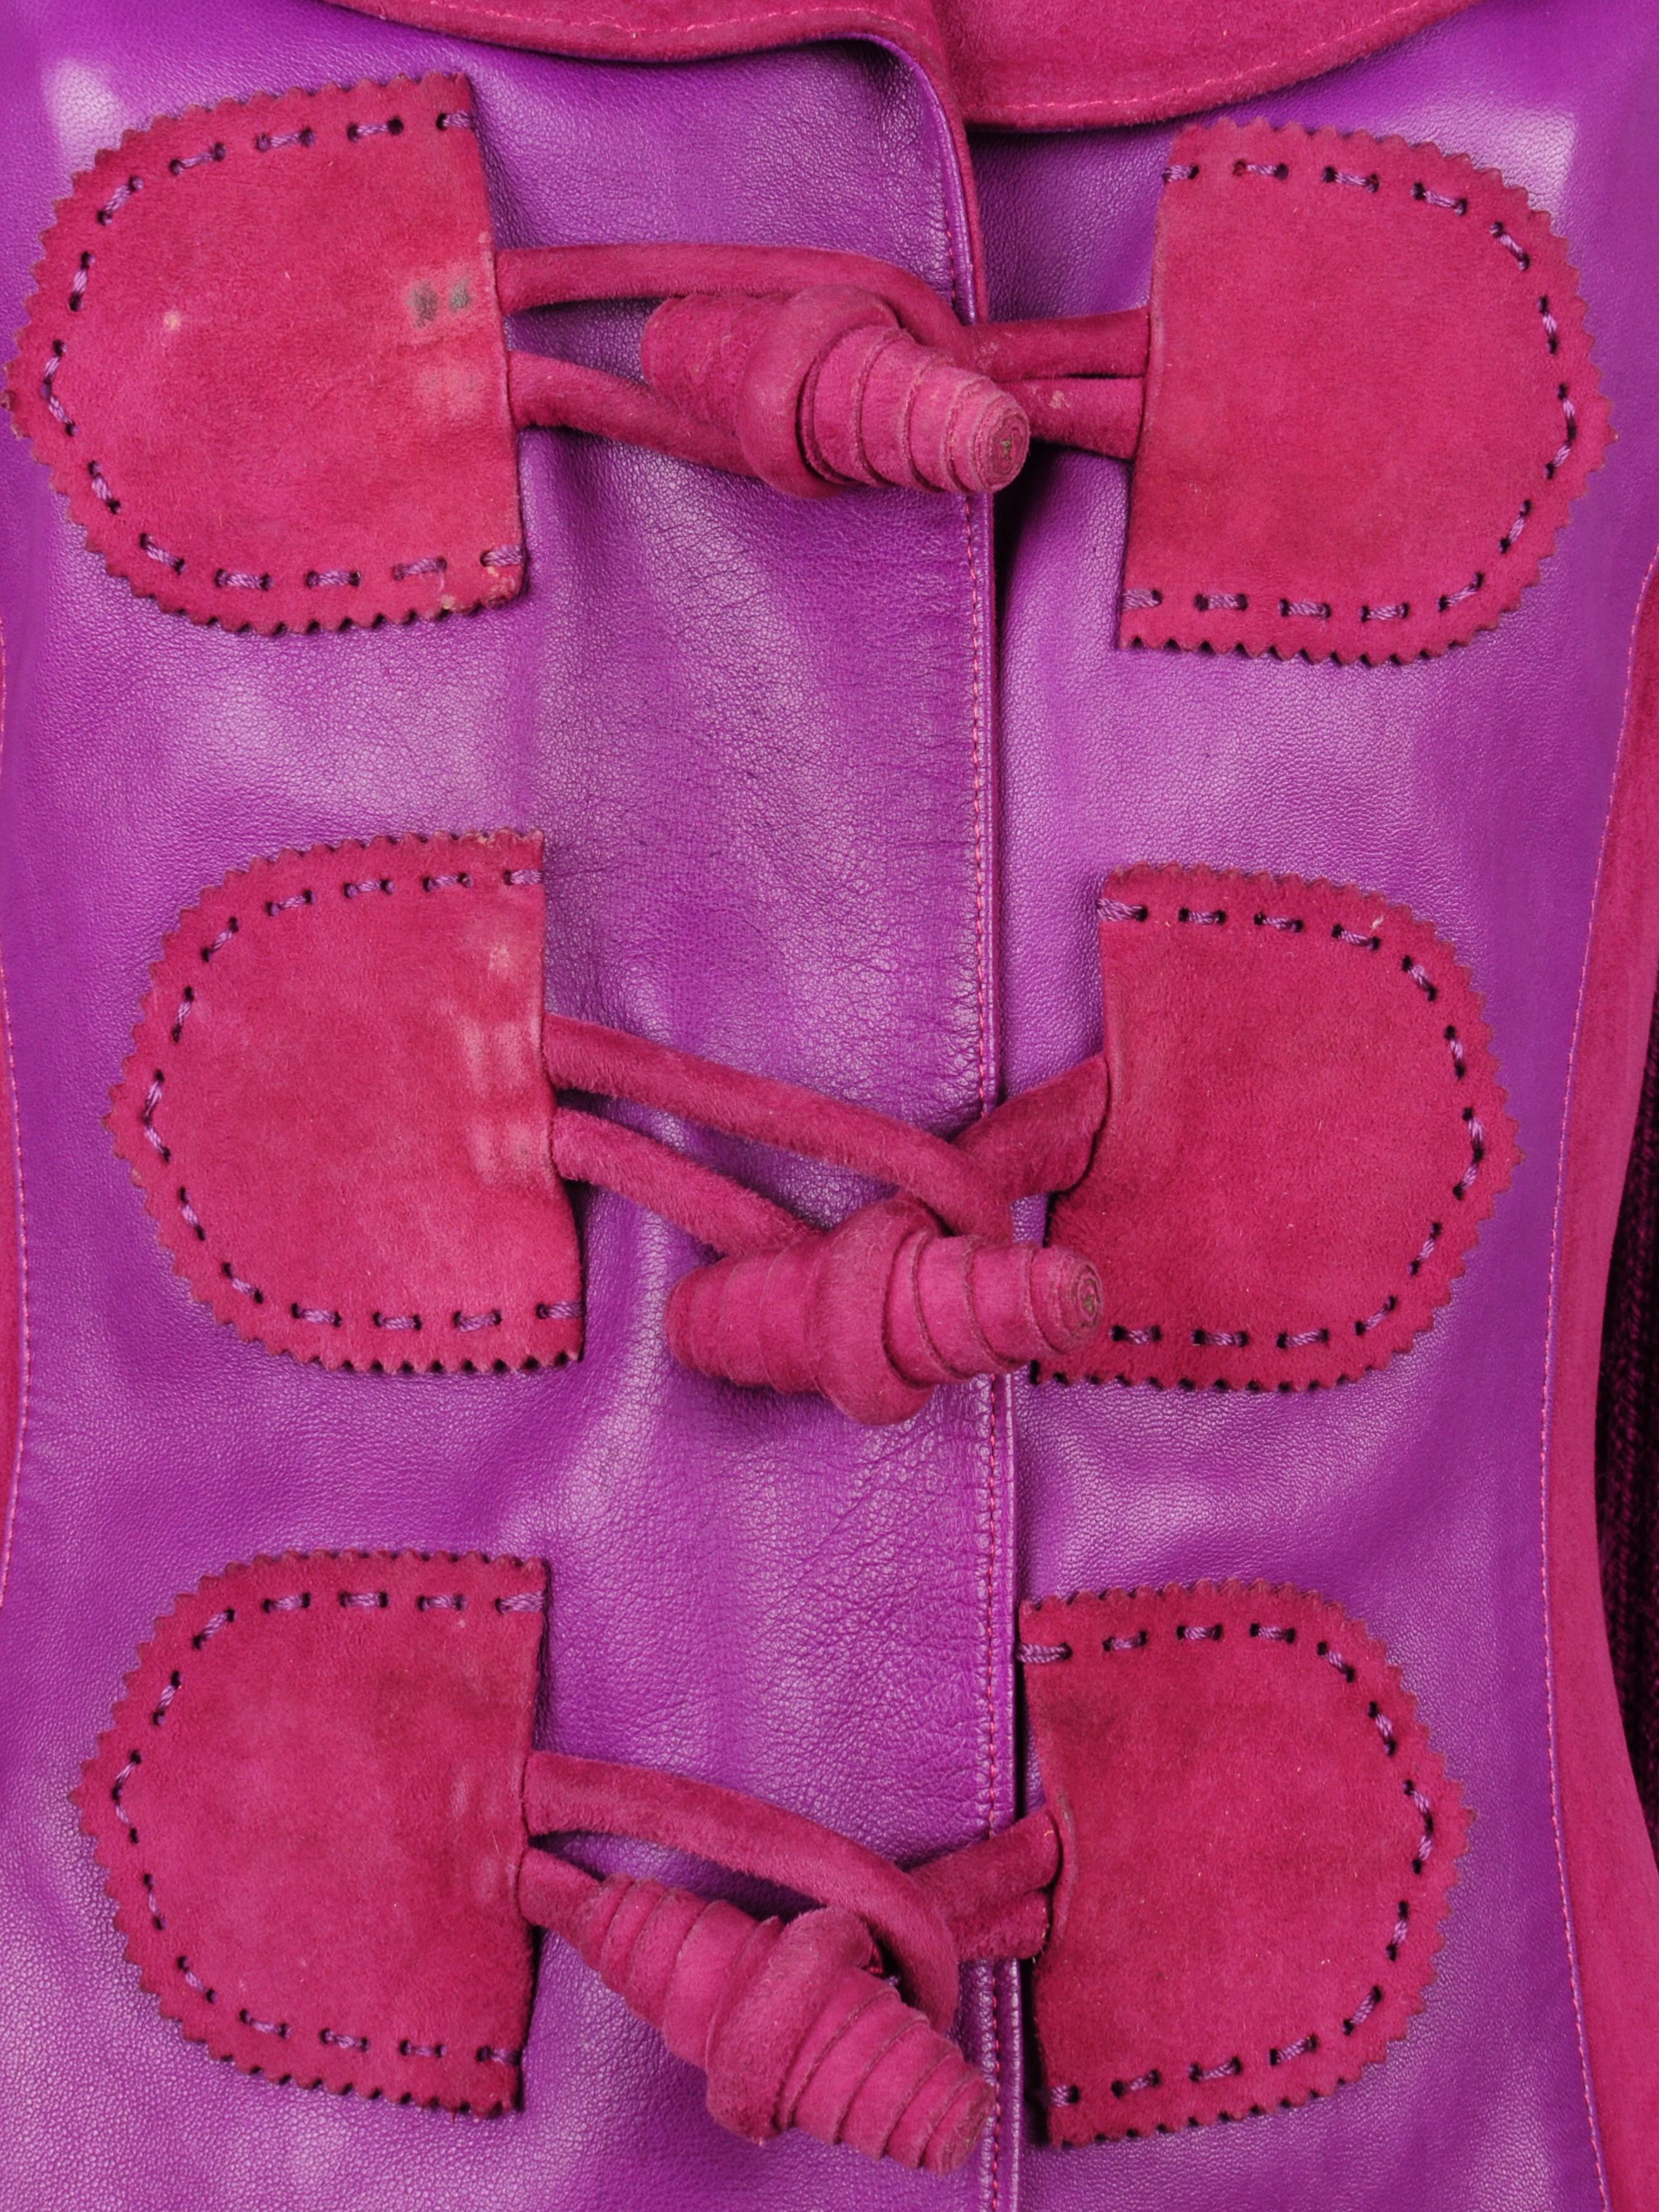 Elizabeth Wessel Monte Carlo Leather and Knitwear Purple Blazer 1980s For Sale 5